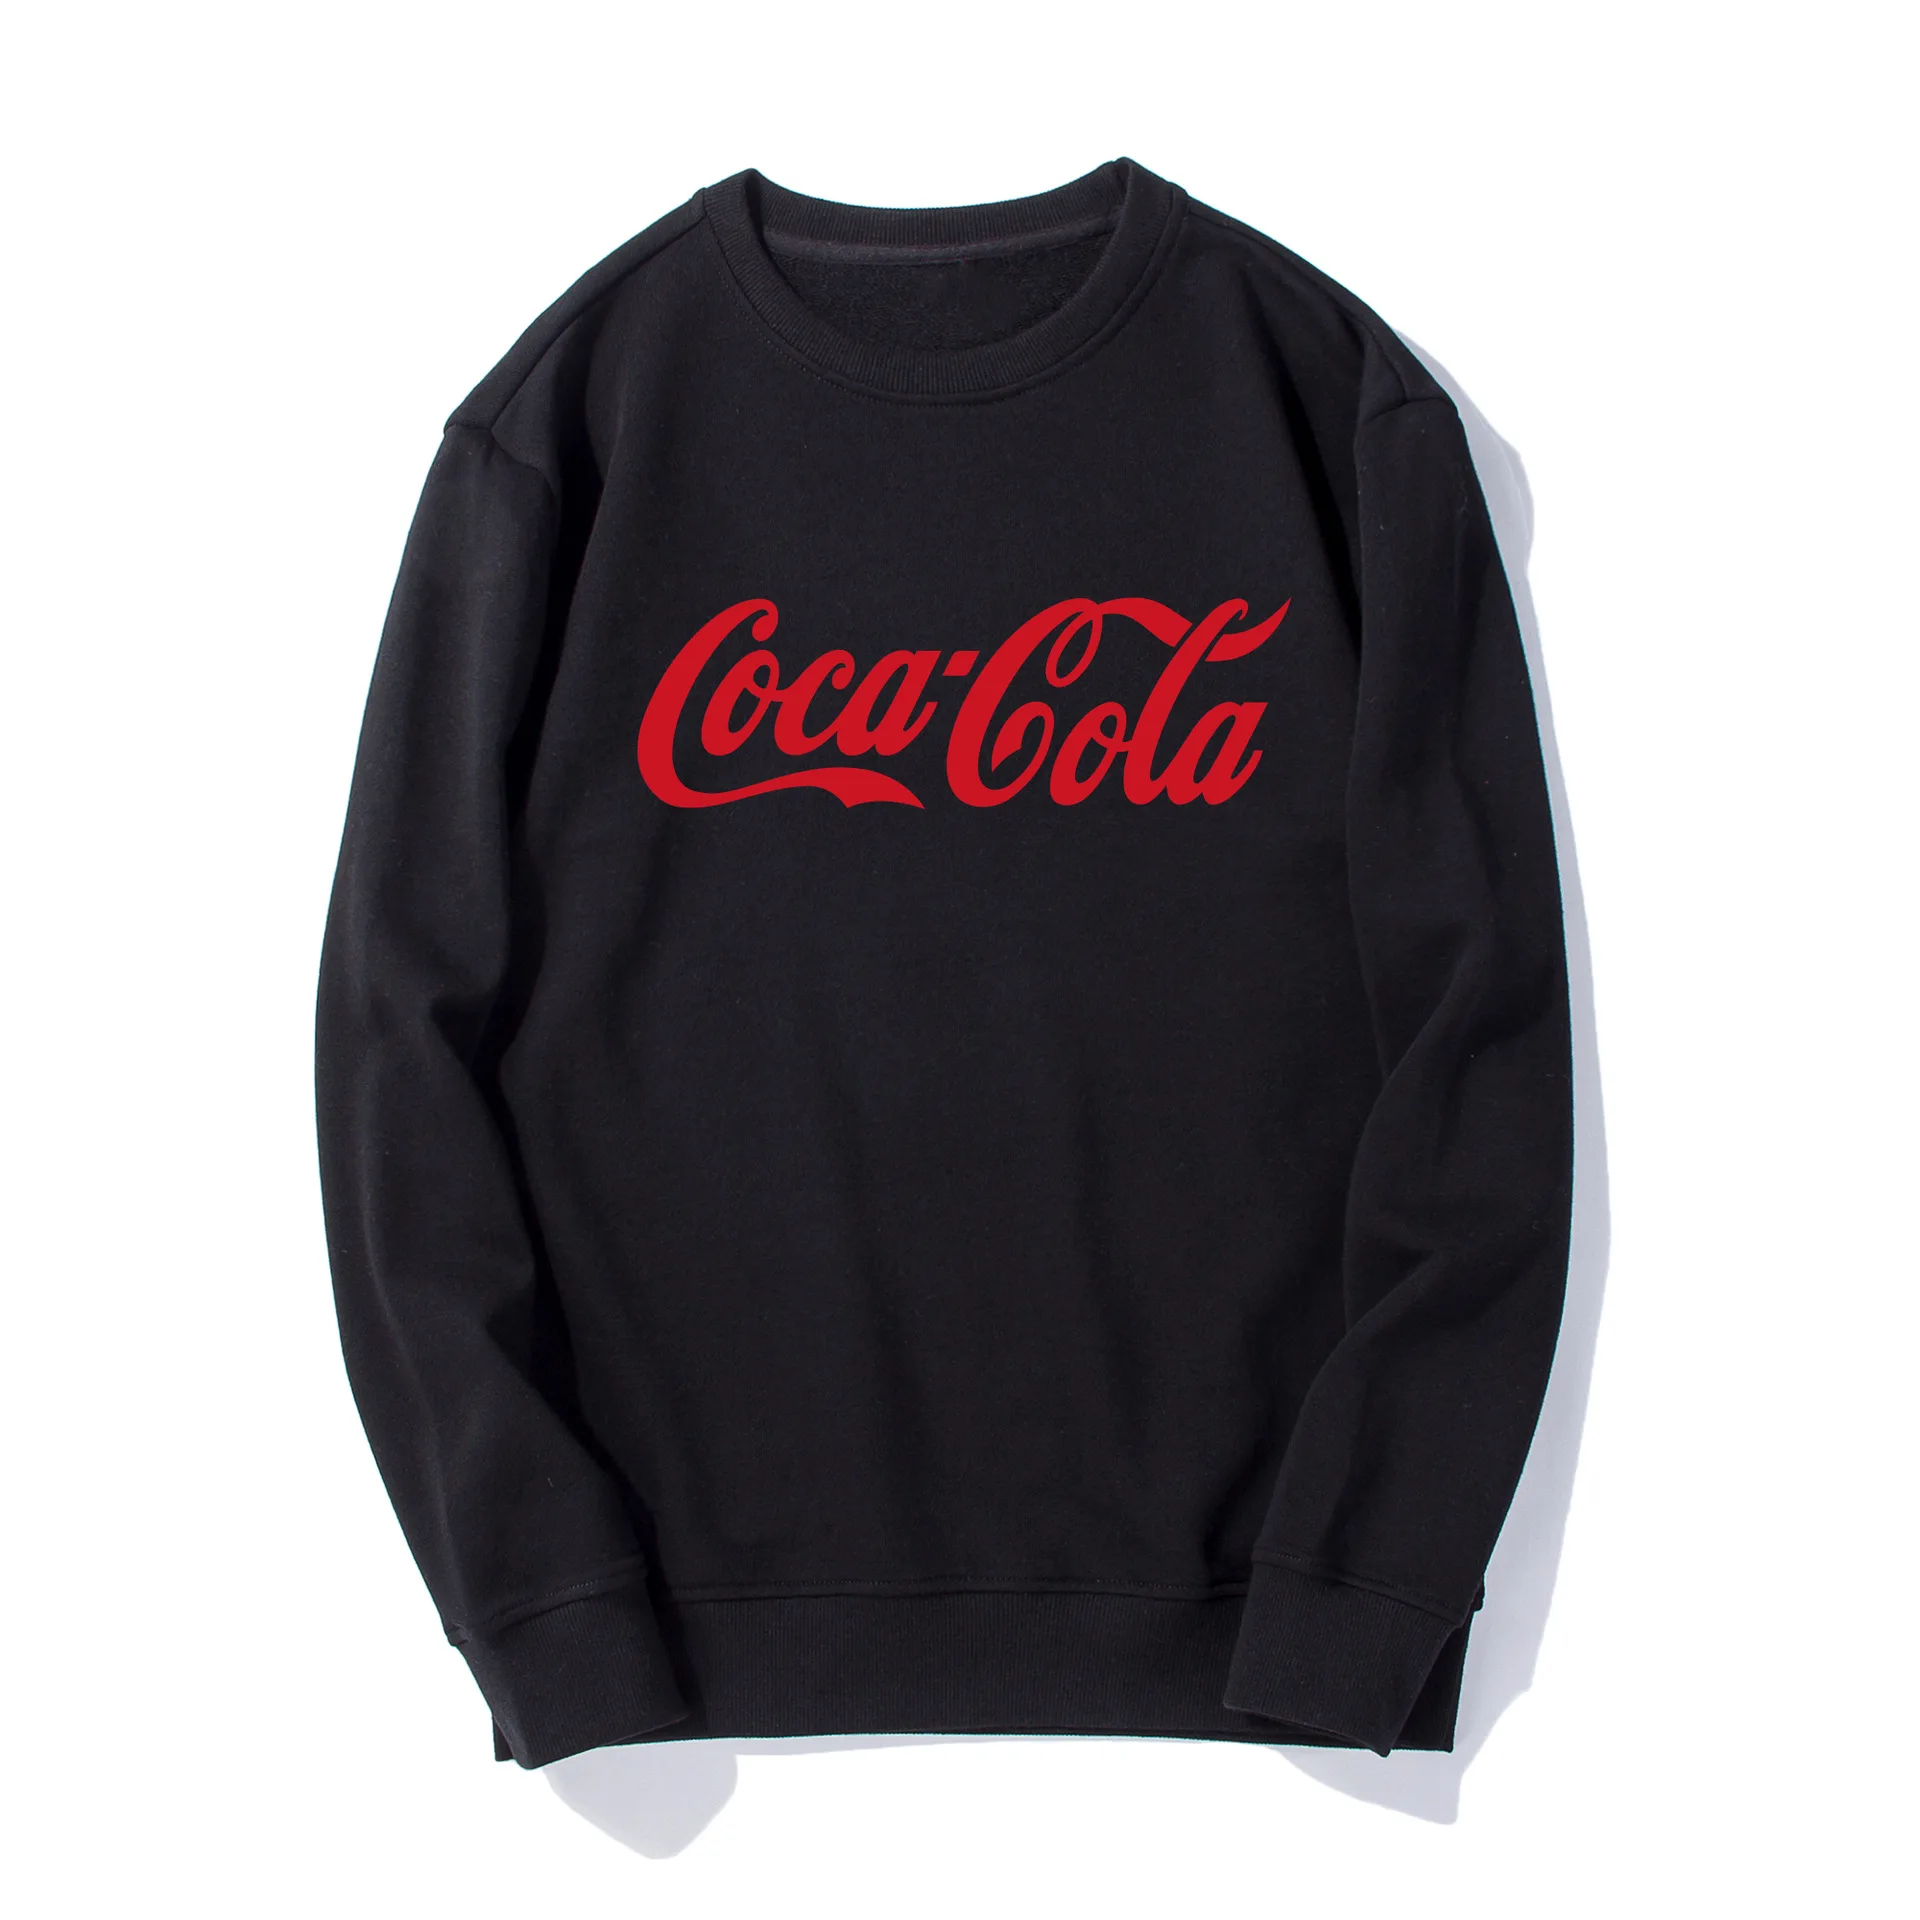 Популярный бренд Coca-Cola, толстовка с капюшоном, европейский и американский стиль, Ретро стиль, высокая улица, свободный крой, длинный рукав, вырез лодочкой, пуловер